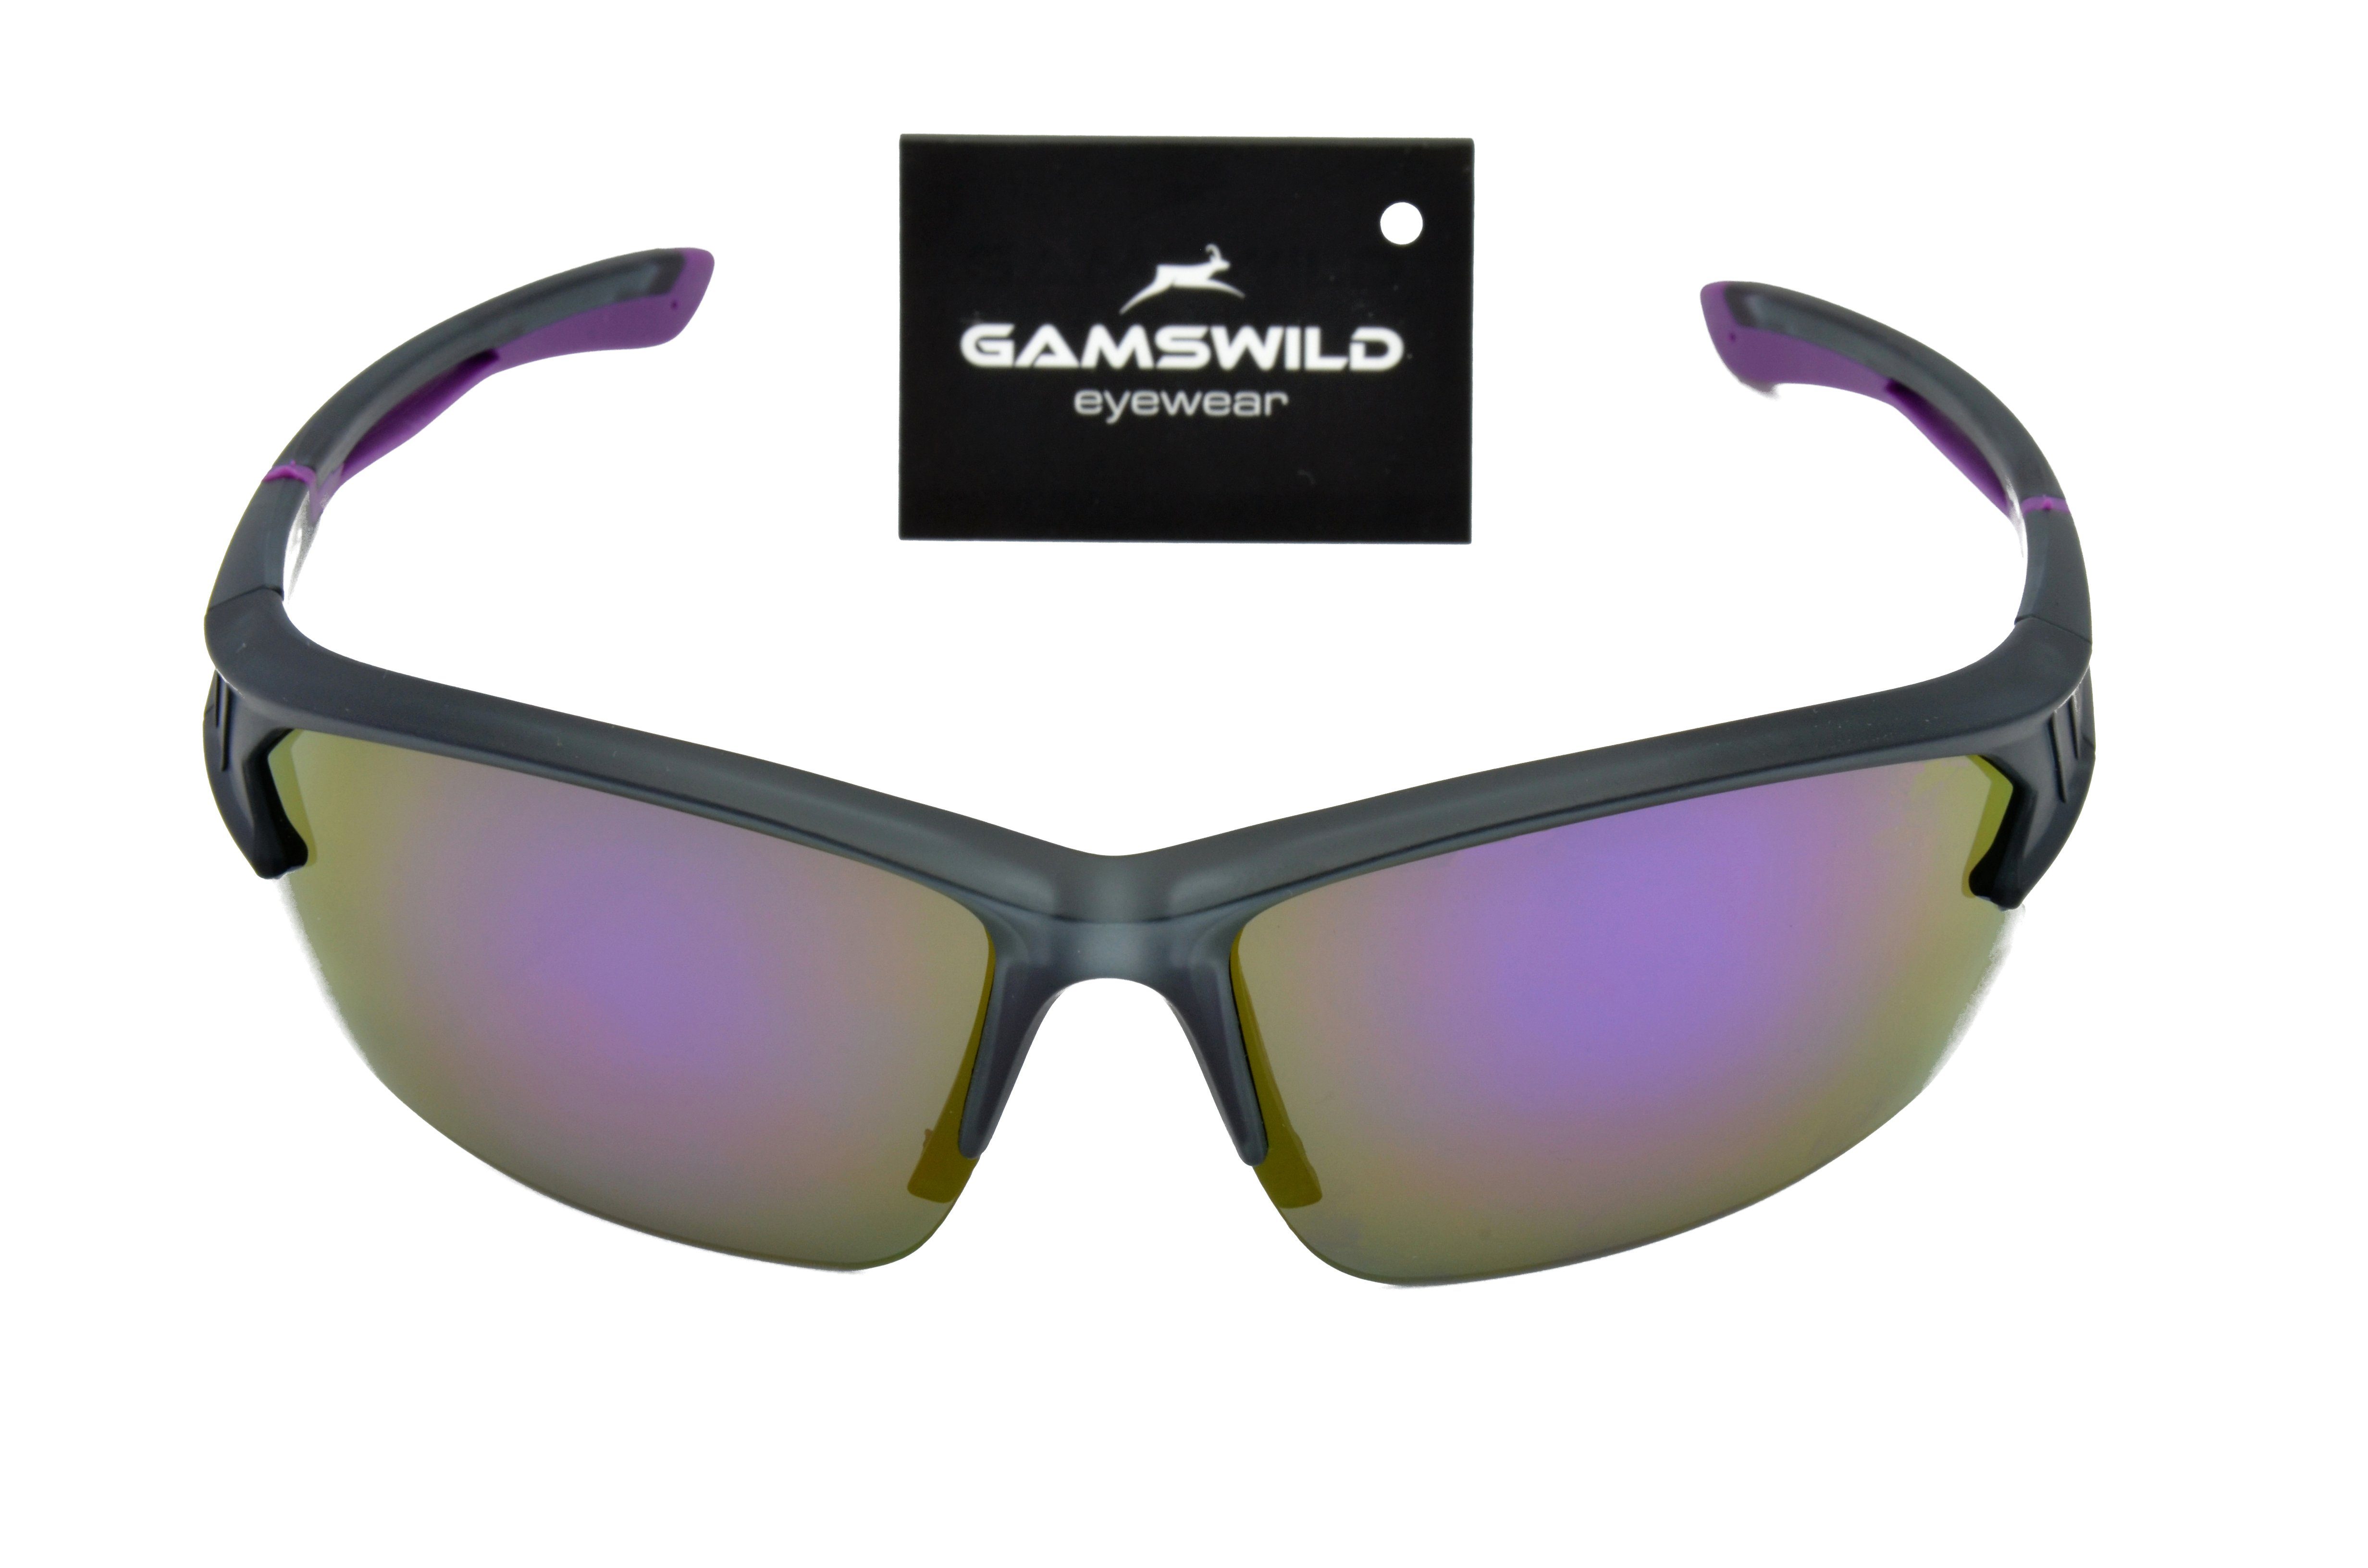 Damen blau, Sonnenbrille Fahrradbrille rot-orange, Sportbrille Skibrille WS6028 Herren Gamswild Halbrahmenbrille Unisex, violett,